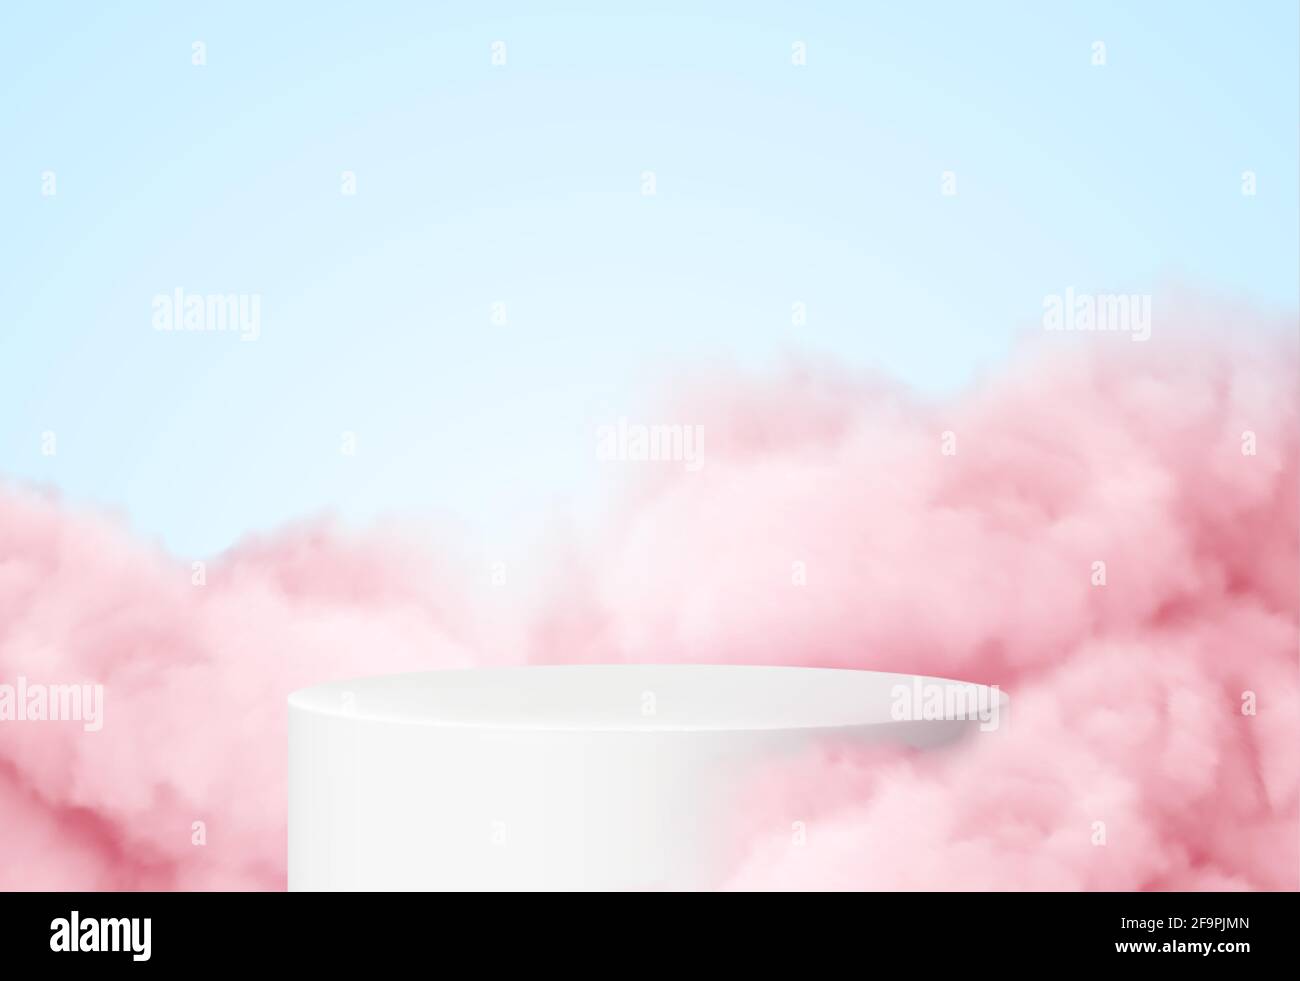 Sfondo blu con un podio prodotto circondato da nuvole rosa. Fumo, nebbia, fondo del vapore. Illustrazione vettoriale Illustrazione Vettoriale